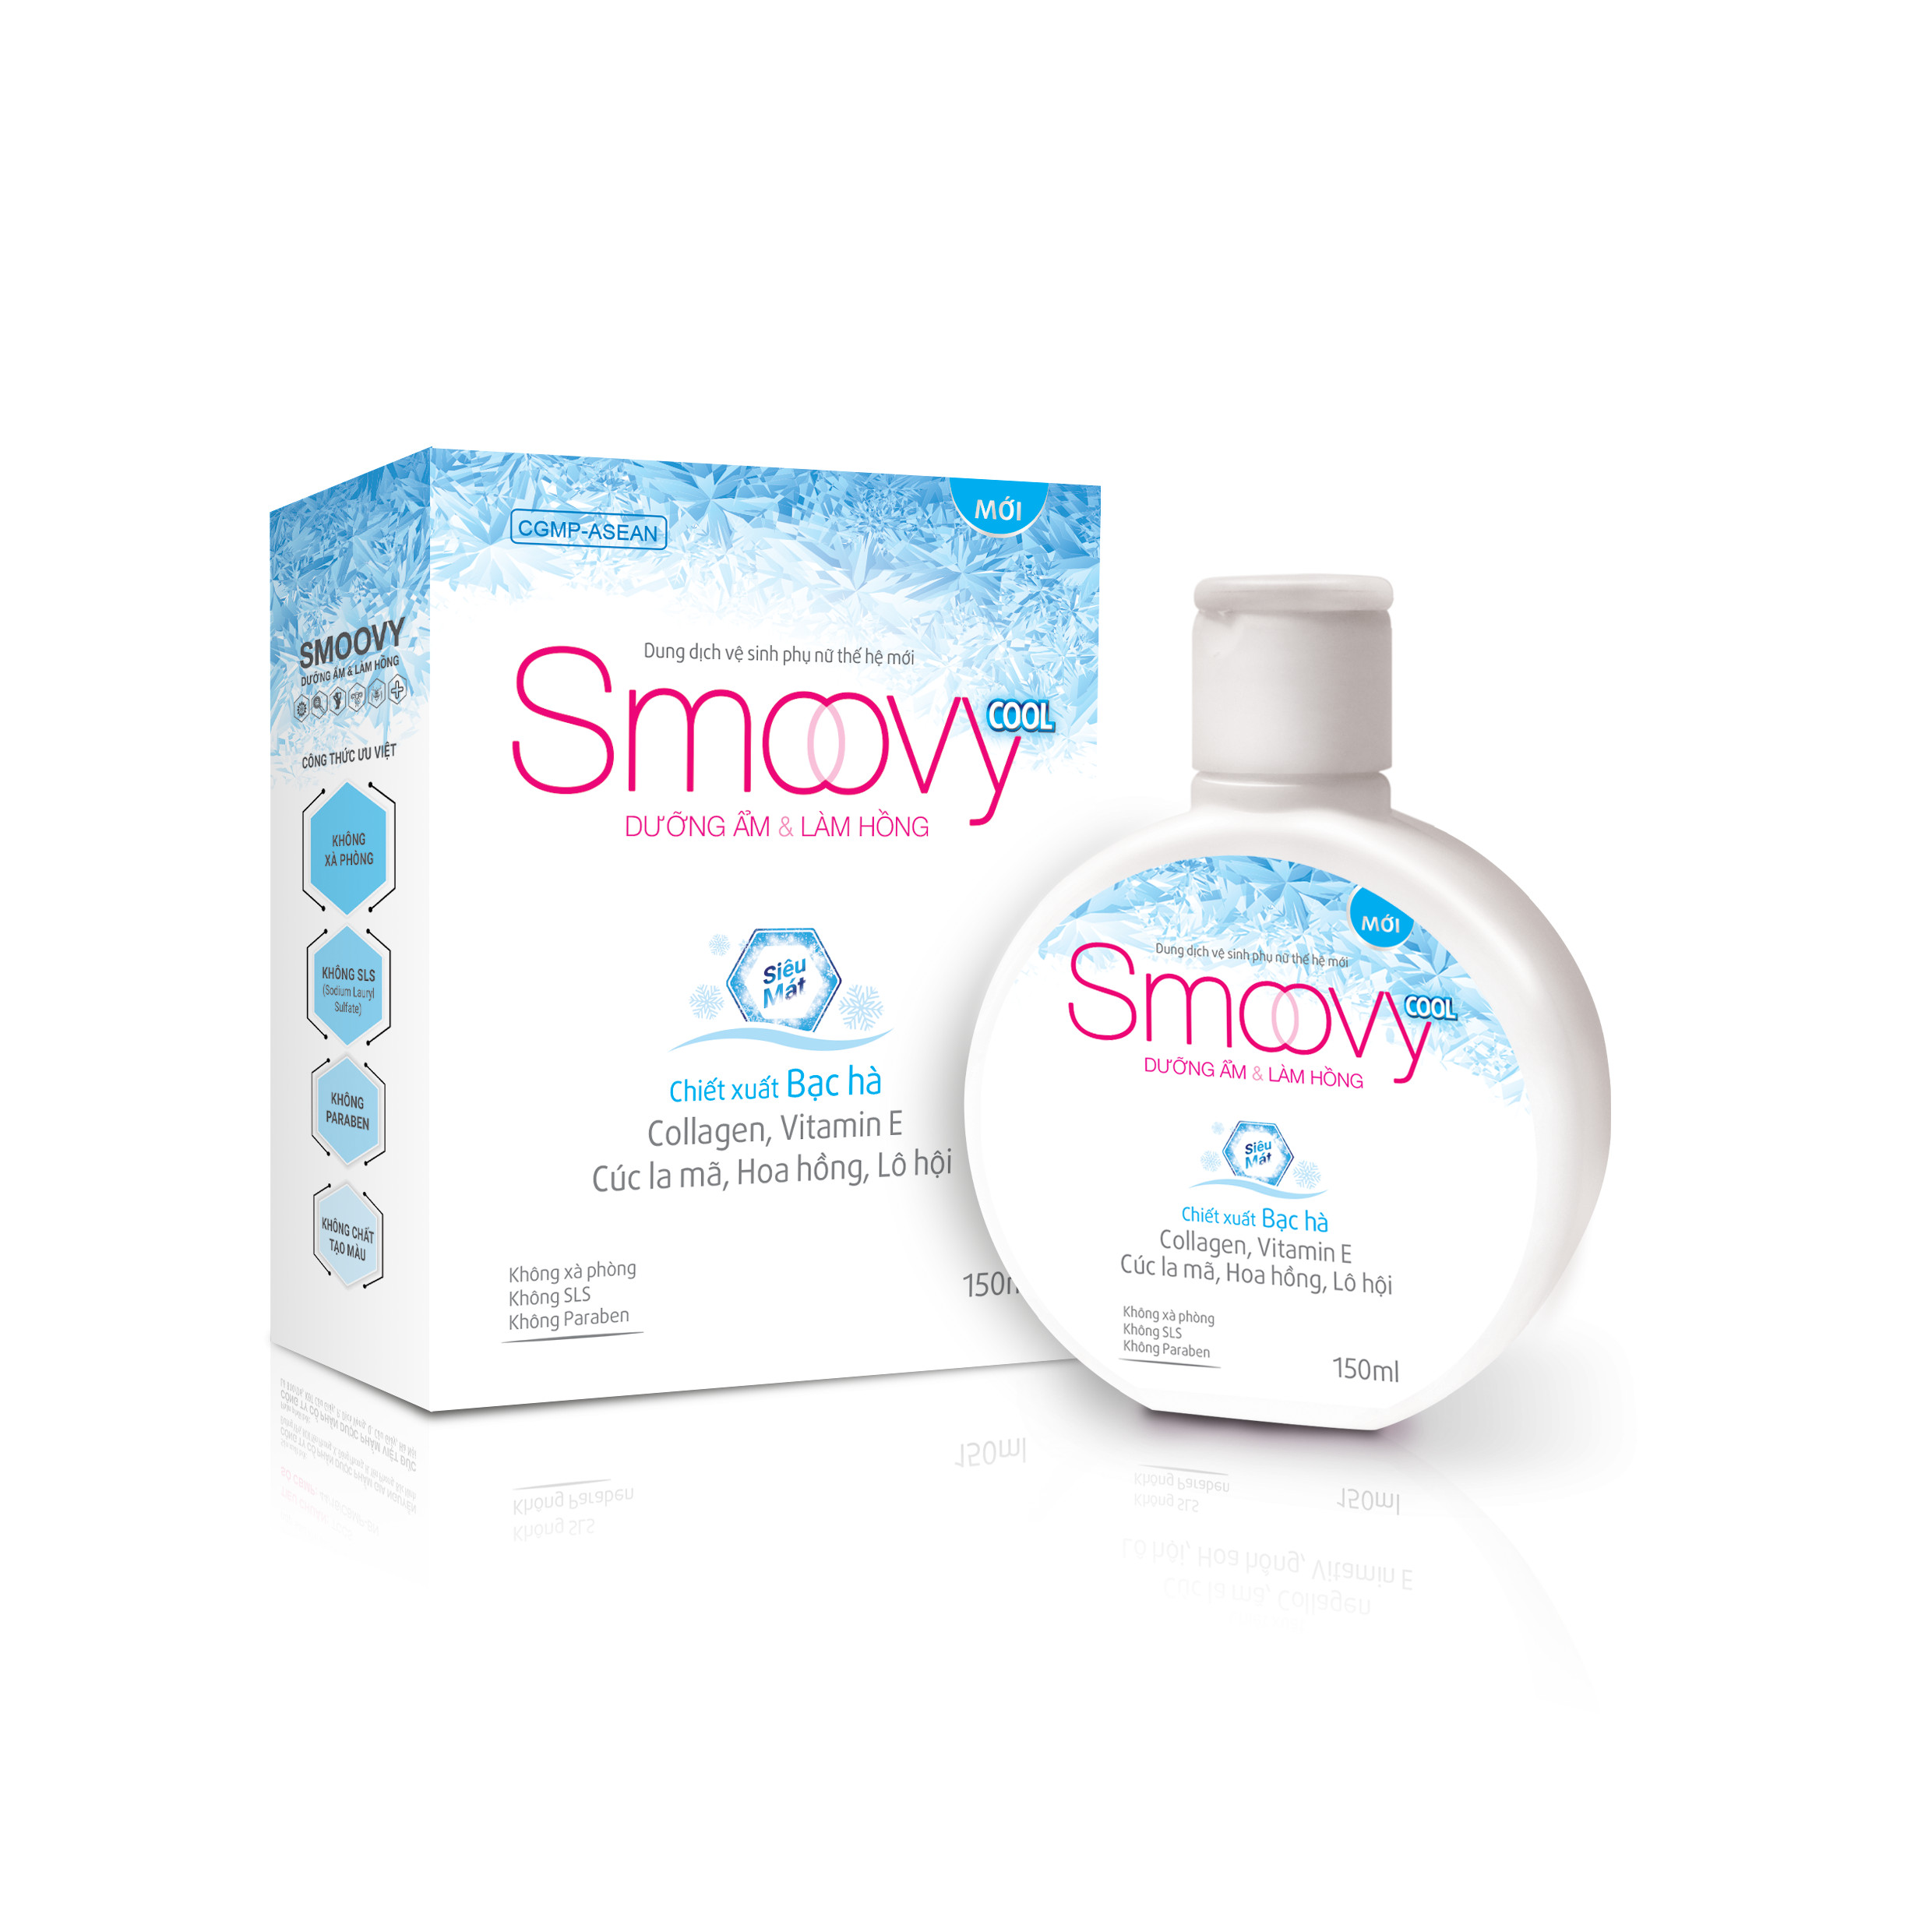 Dung dịch vệ sinh phụ nữ thế hệ mới Smoovy Cool sạch dịu nhẹ - an toàn - kháng khuẩn 150ml